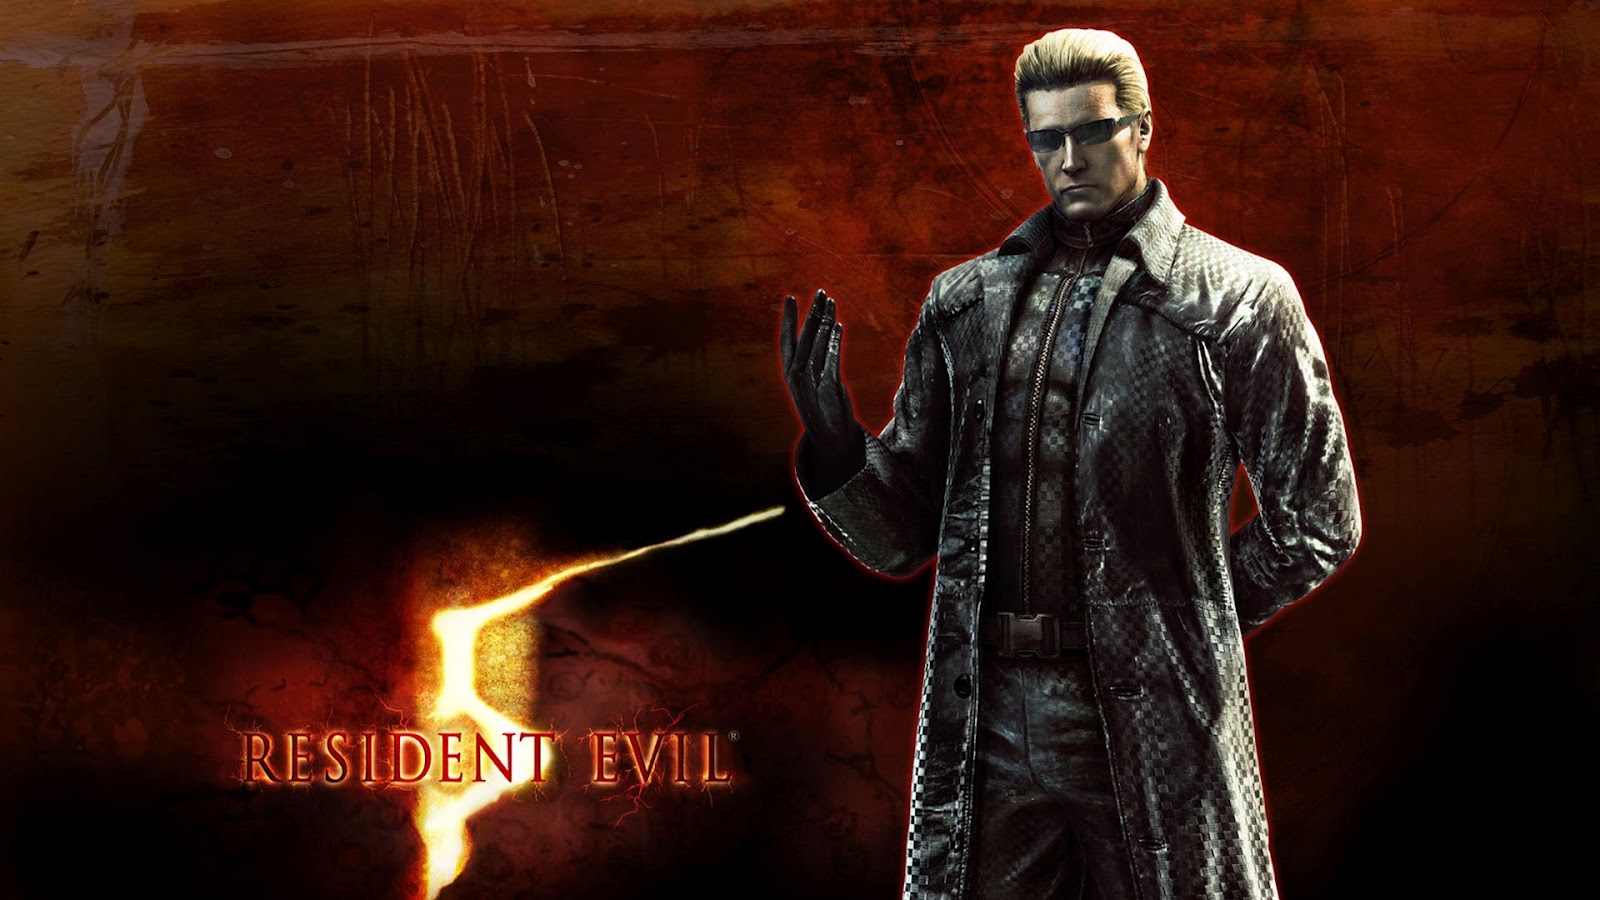 Resident-Evil-Wallpaper-resident-evil-5-4931735-1600-1200.jpg